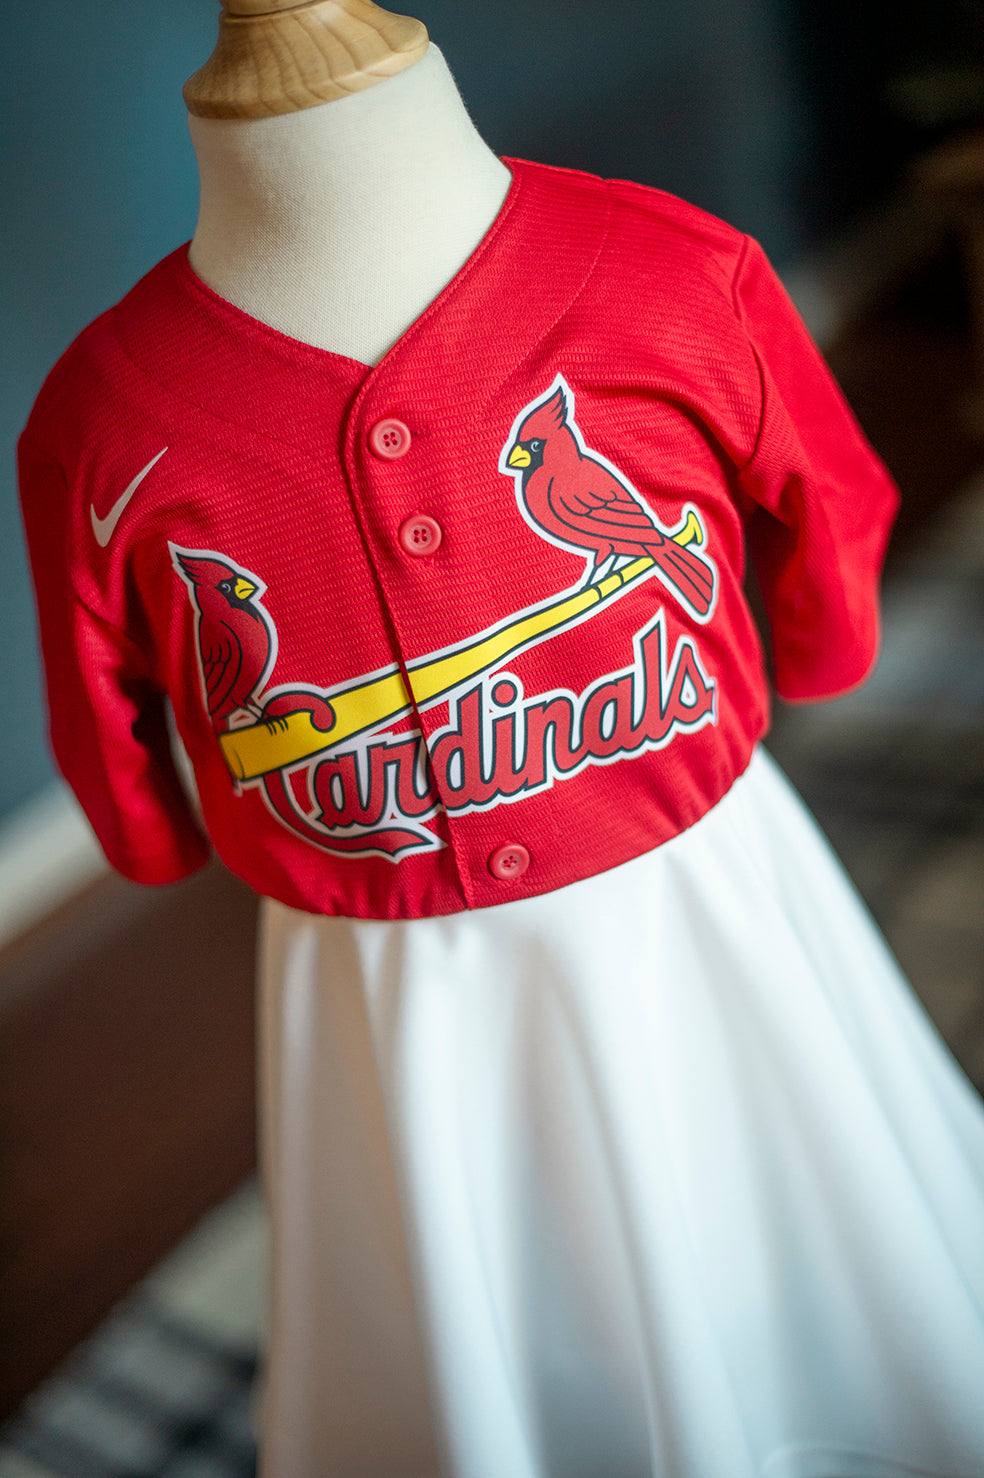 St. Louis Cardinals Red Fan Dress - Girls